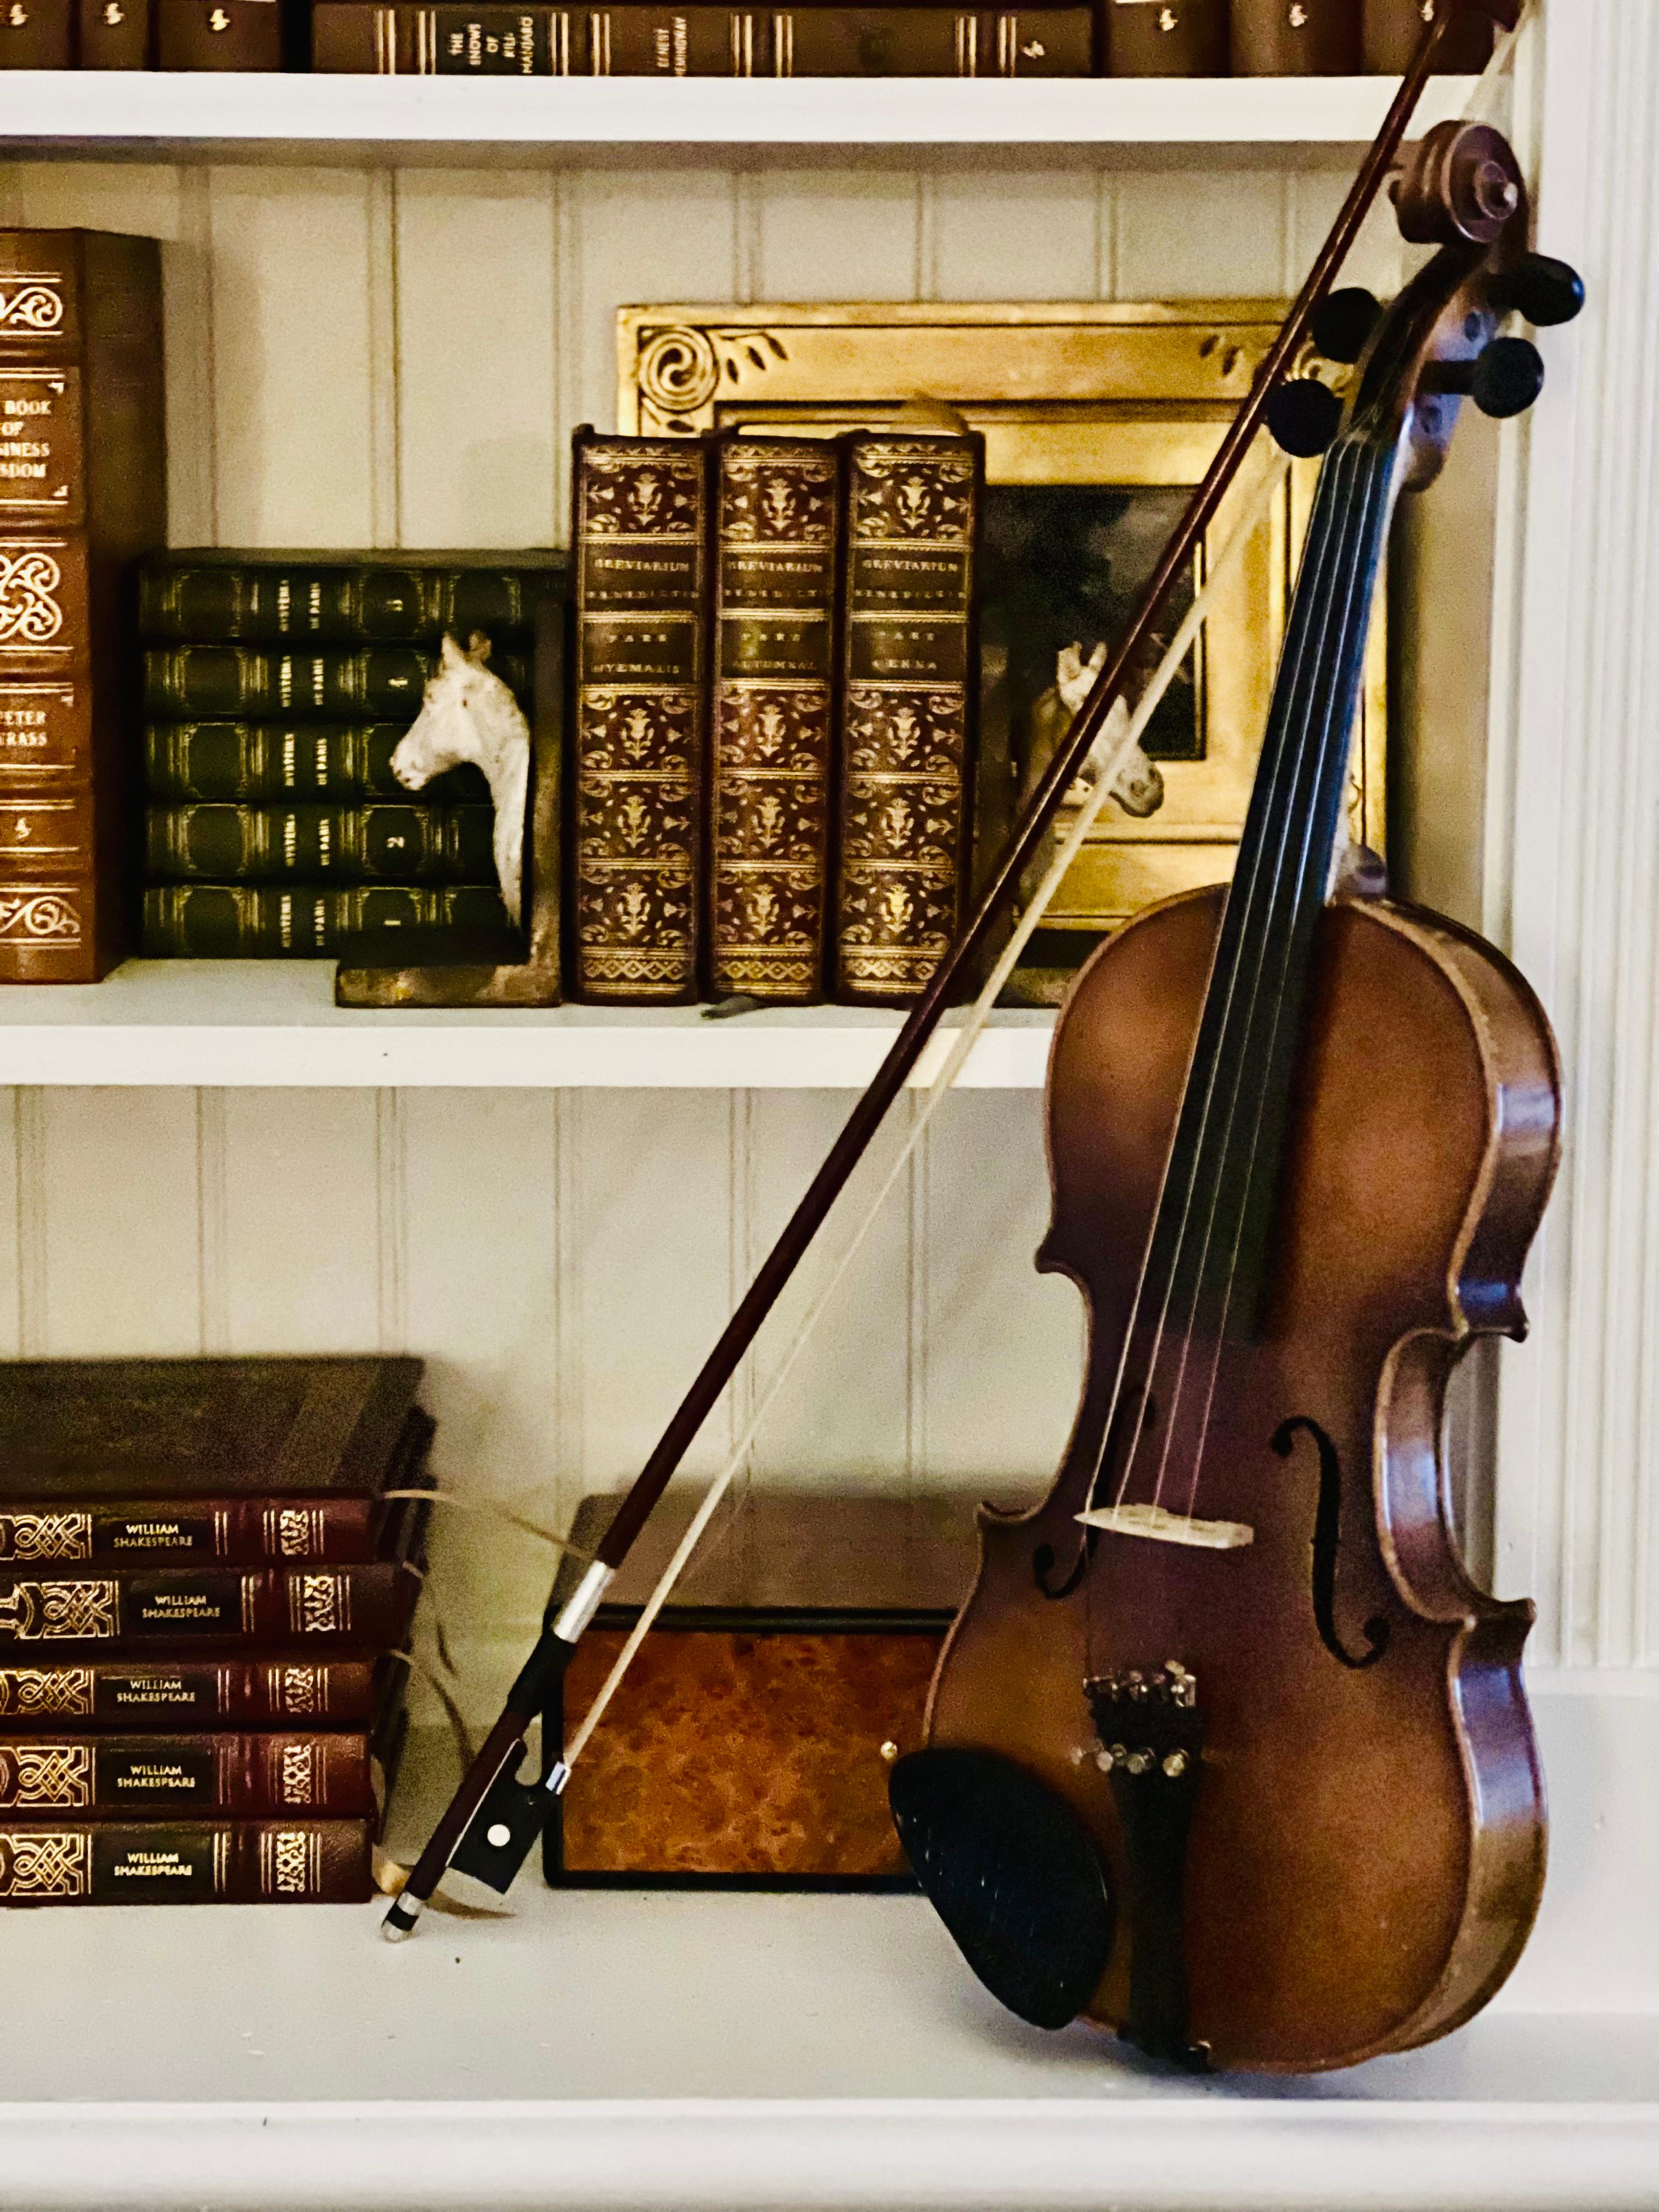 E.R. Copie artisanale Pfretzschner 3/4 du violon Stradivarius d'Antonius, fabriquée en Allemagne, 1970. L'élégance, la richesse du grain du bois et la finesse de l'artisanat mettent en valeur la beauté de ce violon. Il est en bon état de jeu et est